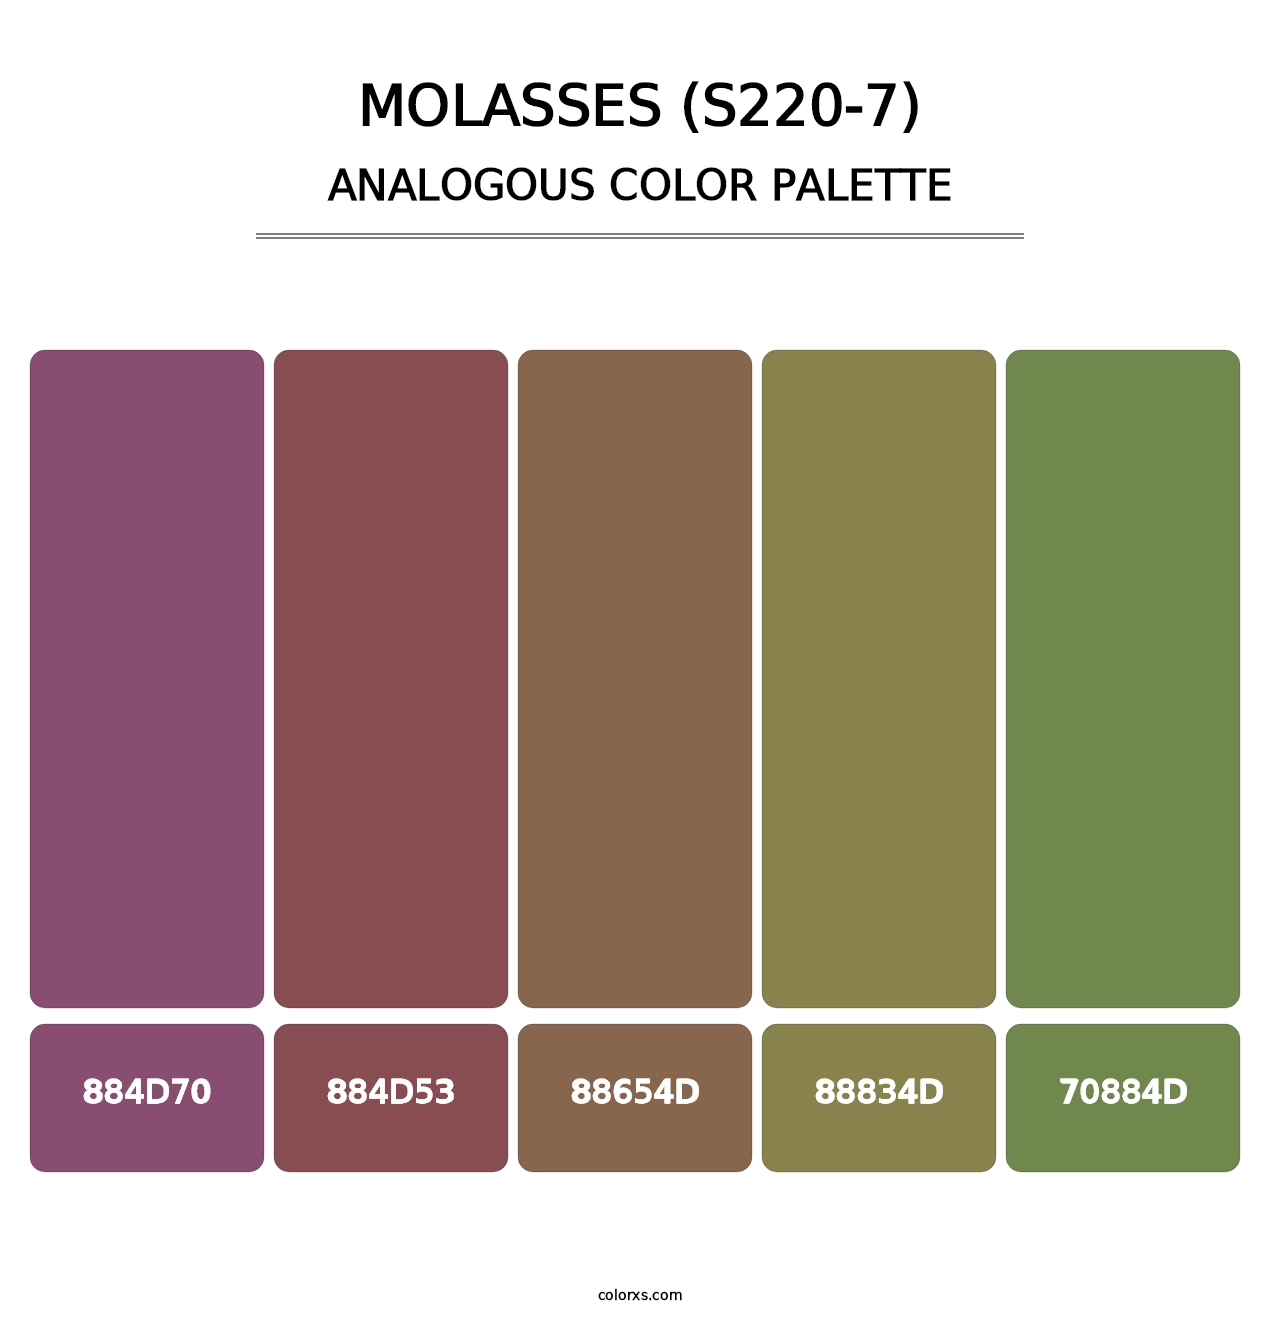 Molasses (S220-7) - Analogous Color Palette